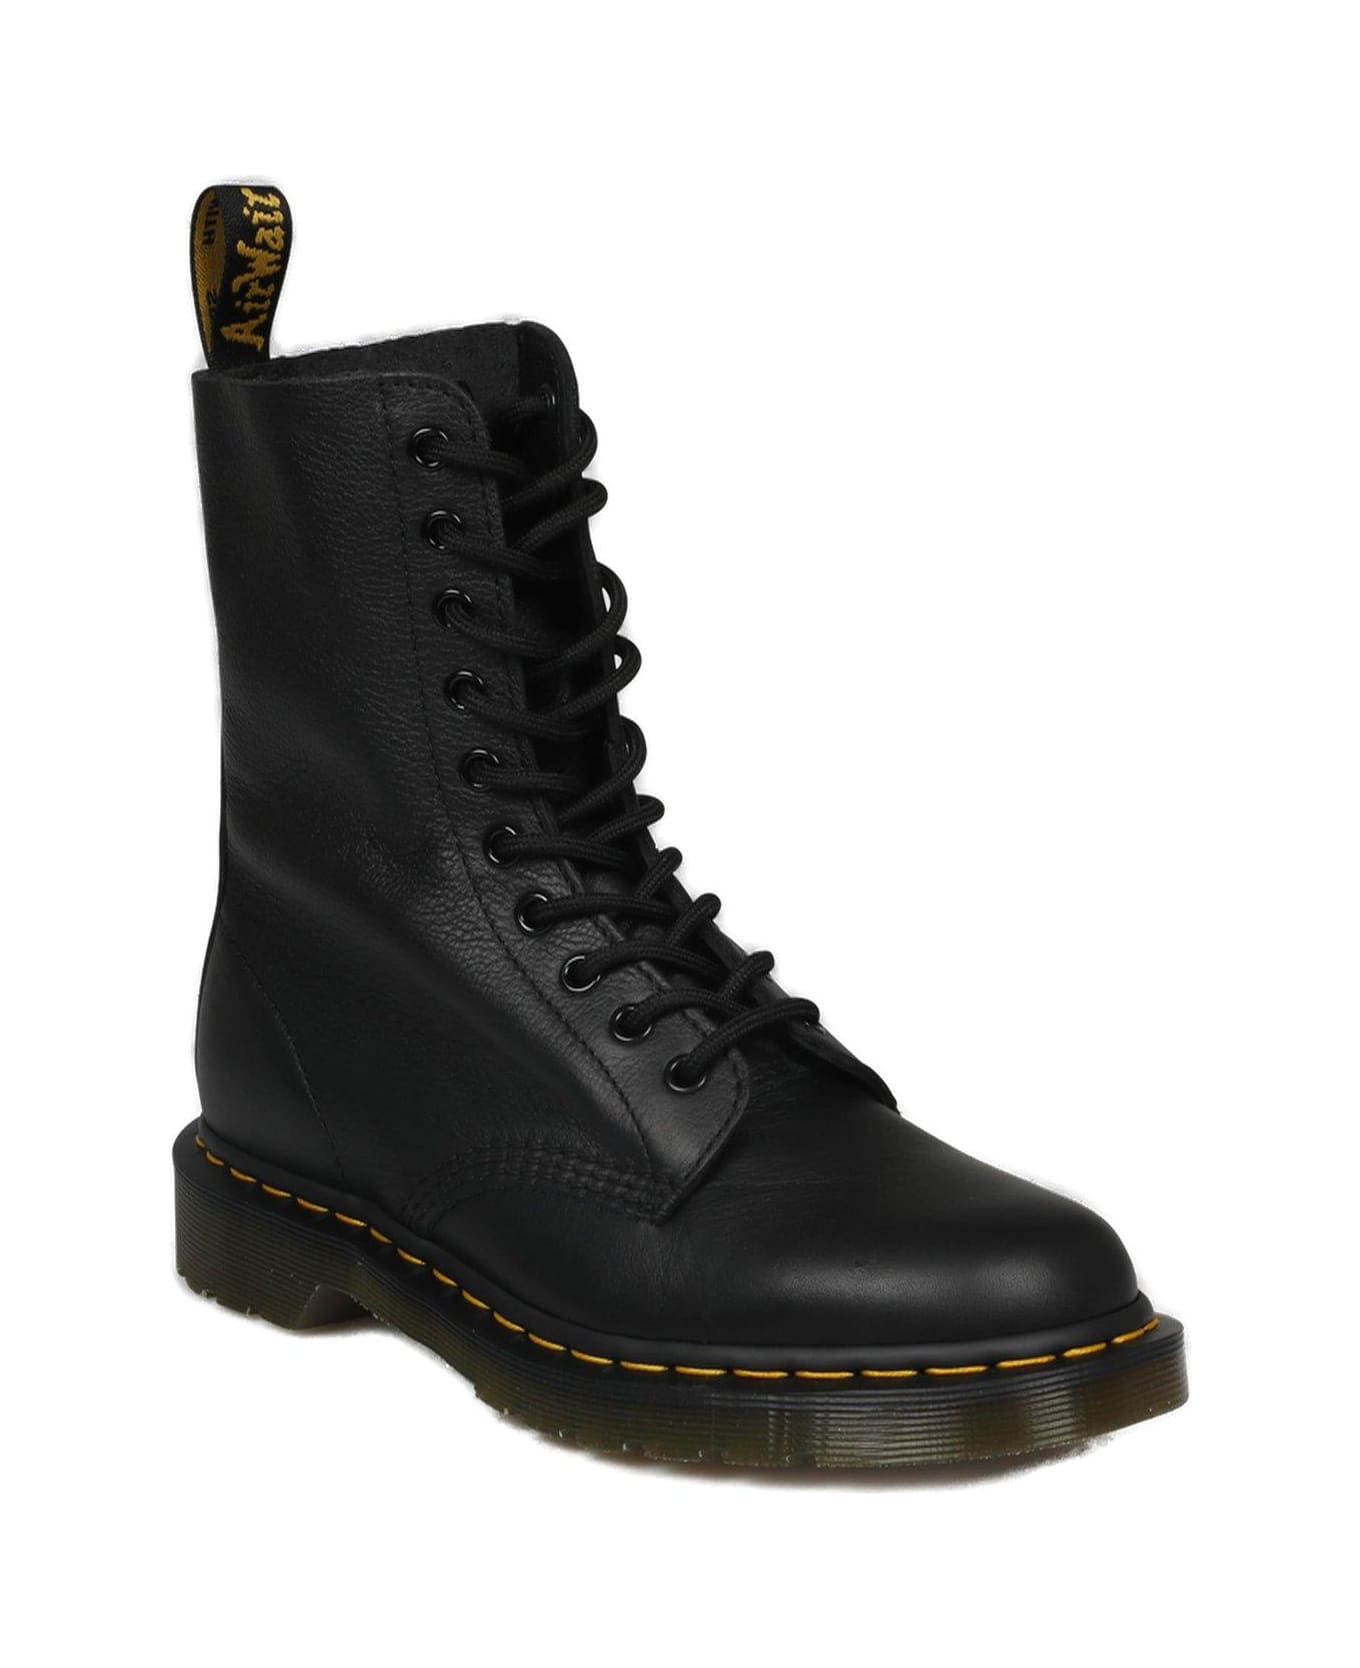 Dr. Martens 1490 Combat Boots - Black ブーツ